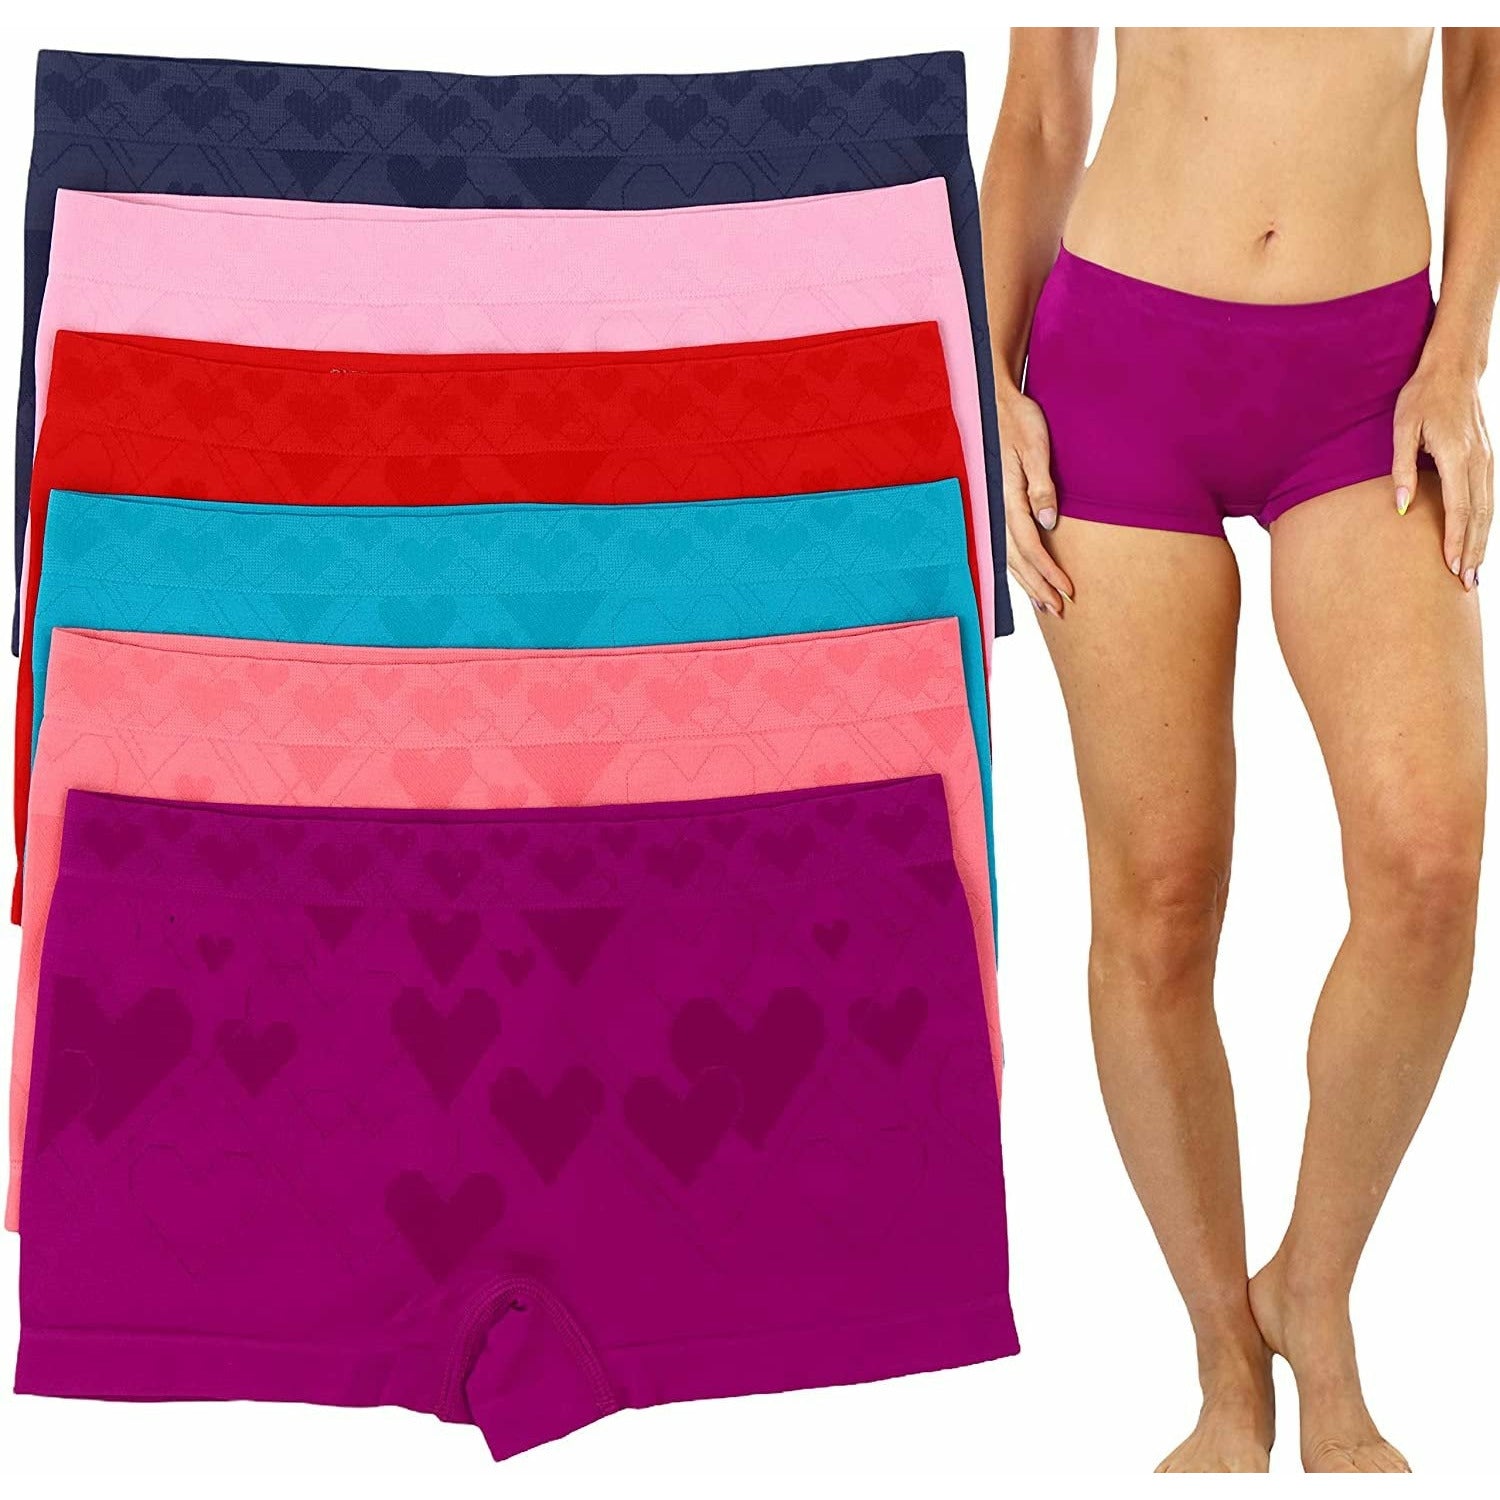 Valentine's Day Spandex Boy Shorts Underwear Pantieswomen Nylon Spandex Boy  Shorts Women Boy Shorts Panties Hot Pink Boy-shorts 